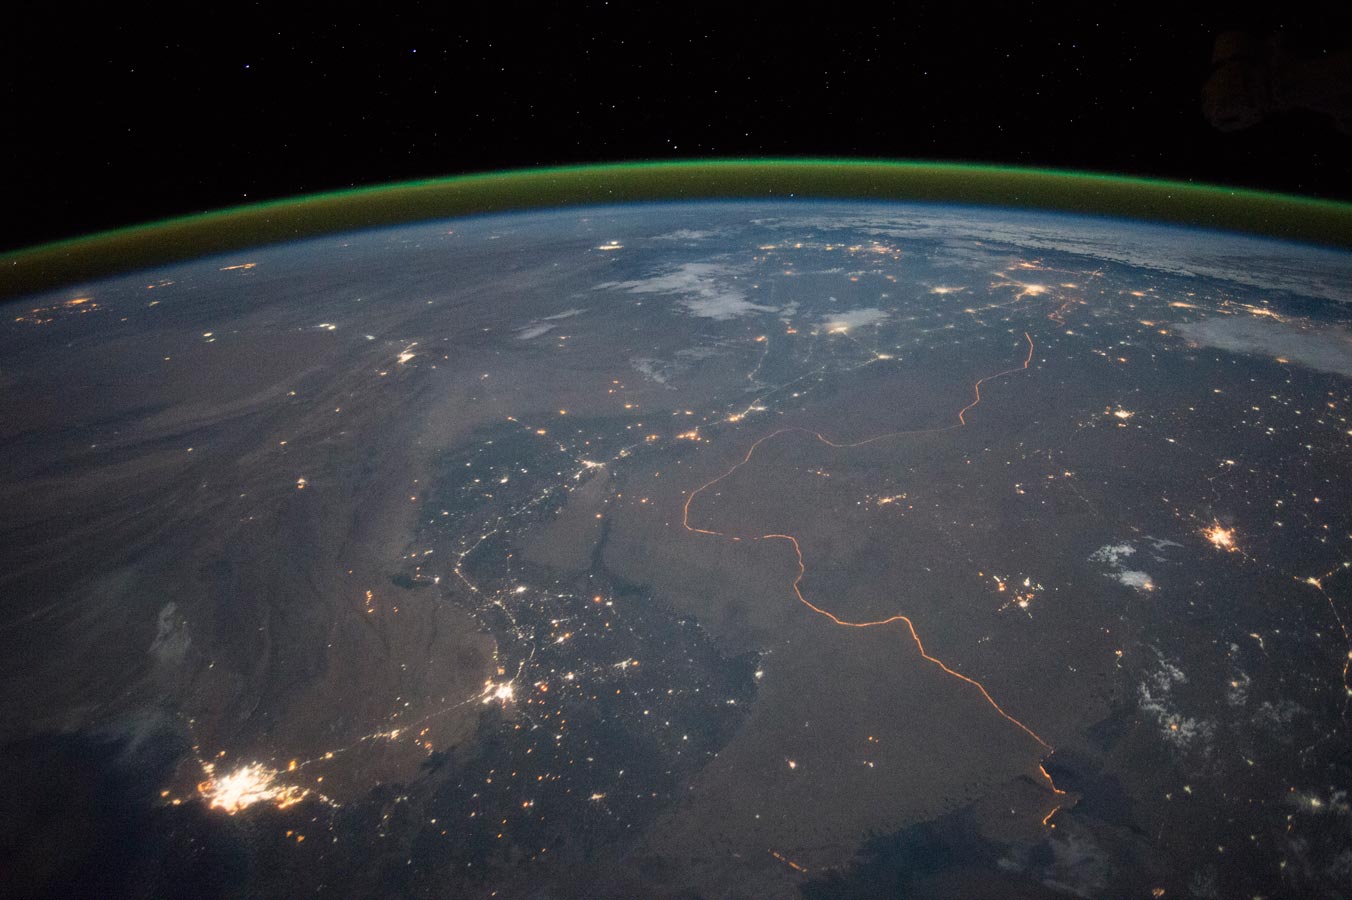 Подсвеченная огнями Индийско-Пакистанская граница вдоль реки Инд. Эта фотография показывает одно из немногих мест на Земле, где межгосударственная граница может быть видна даже из космоса с МКС в ночное время. Такой эффект получается из-за зажженных огней безопасности с ярко-оранжевым оттенком вдоль всей границы.